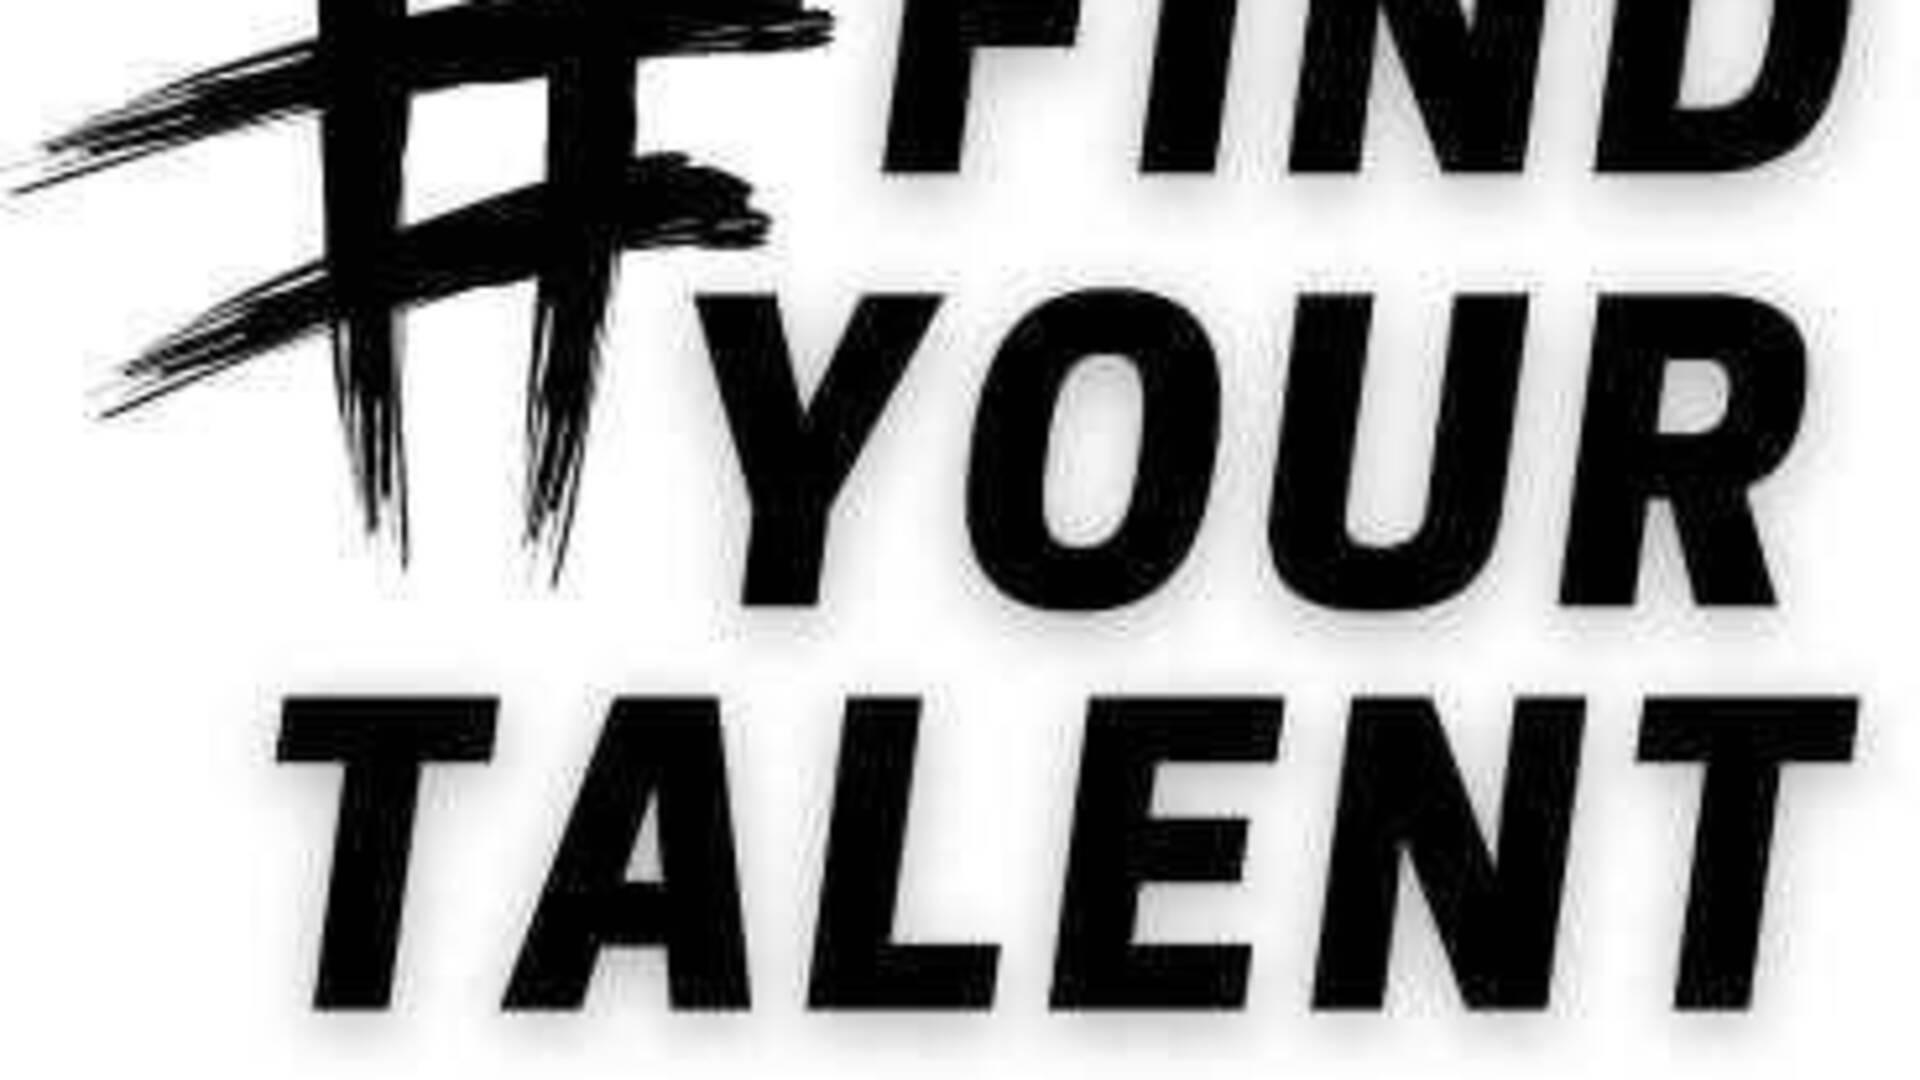 Find your talent, studenti alla ricerca del proprio talento con sportivi, imprenditori ed eccellenze culturali